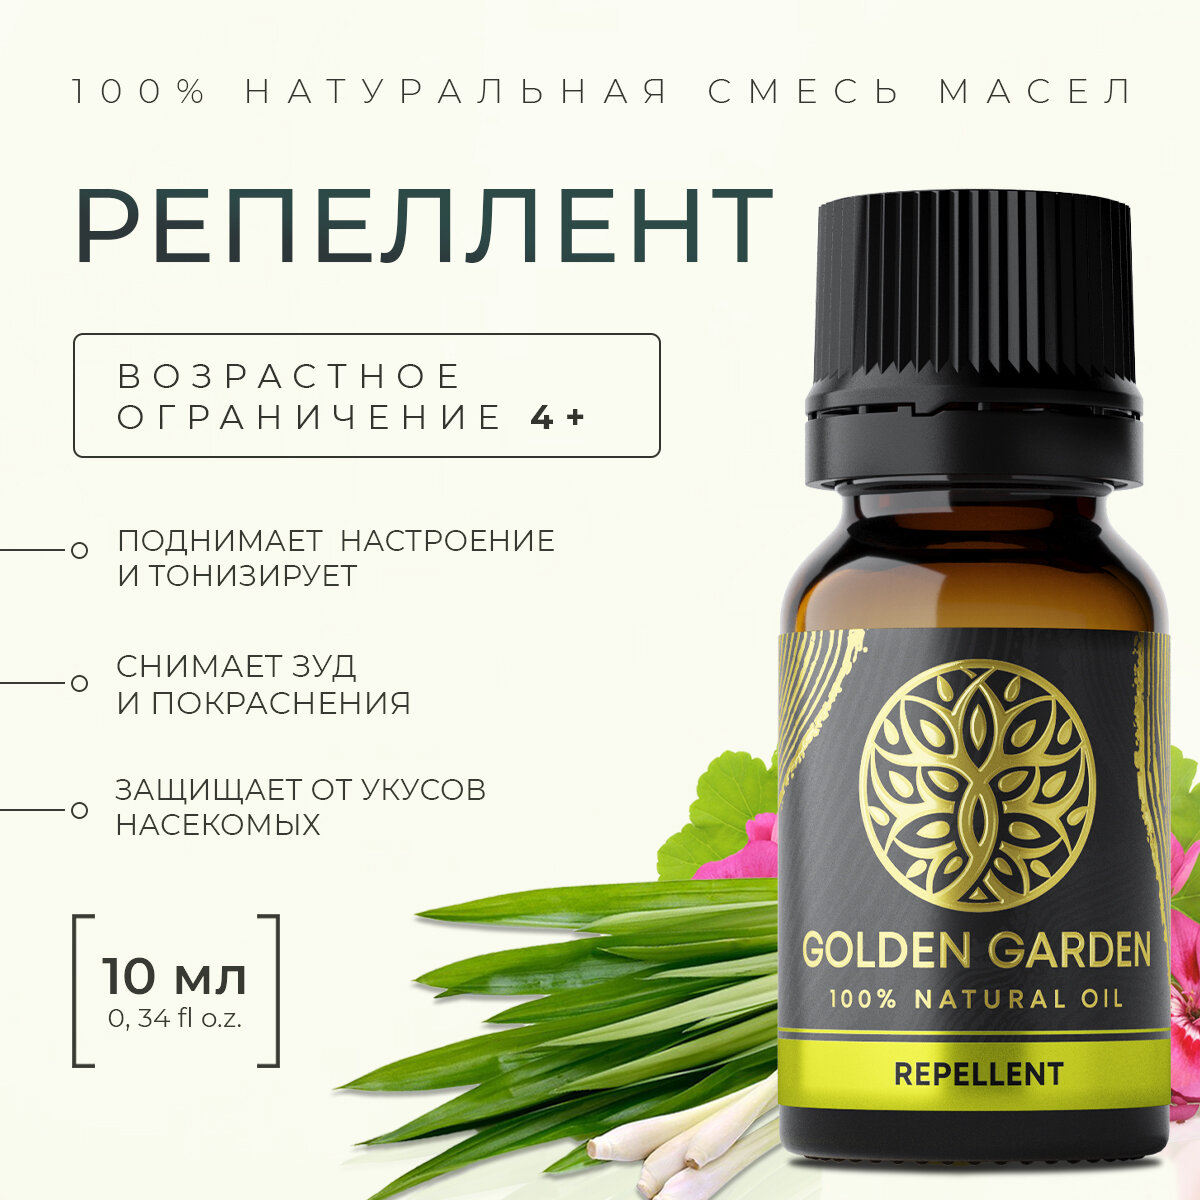 Смесь Эфирных масел реппелент 10мл Golden Garden для ароматерапии, диффузора, бани и сауны